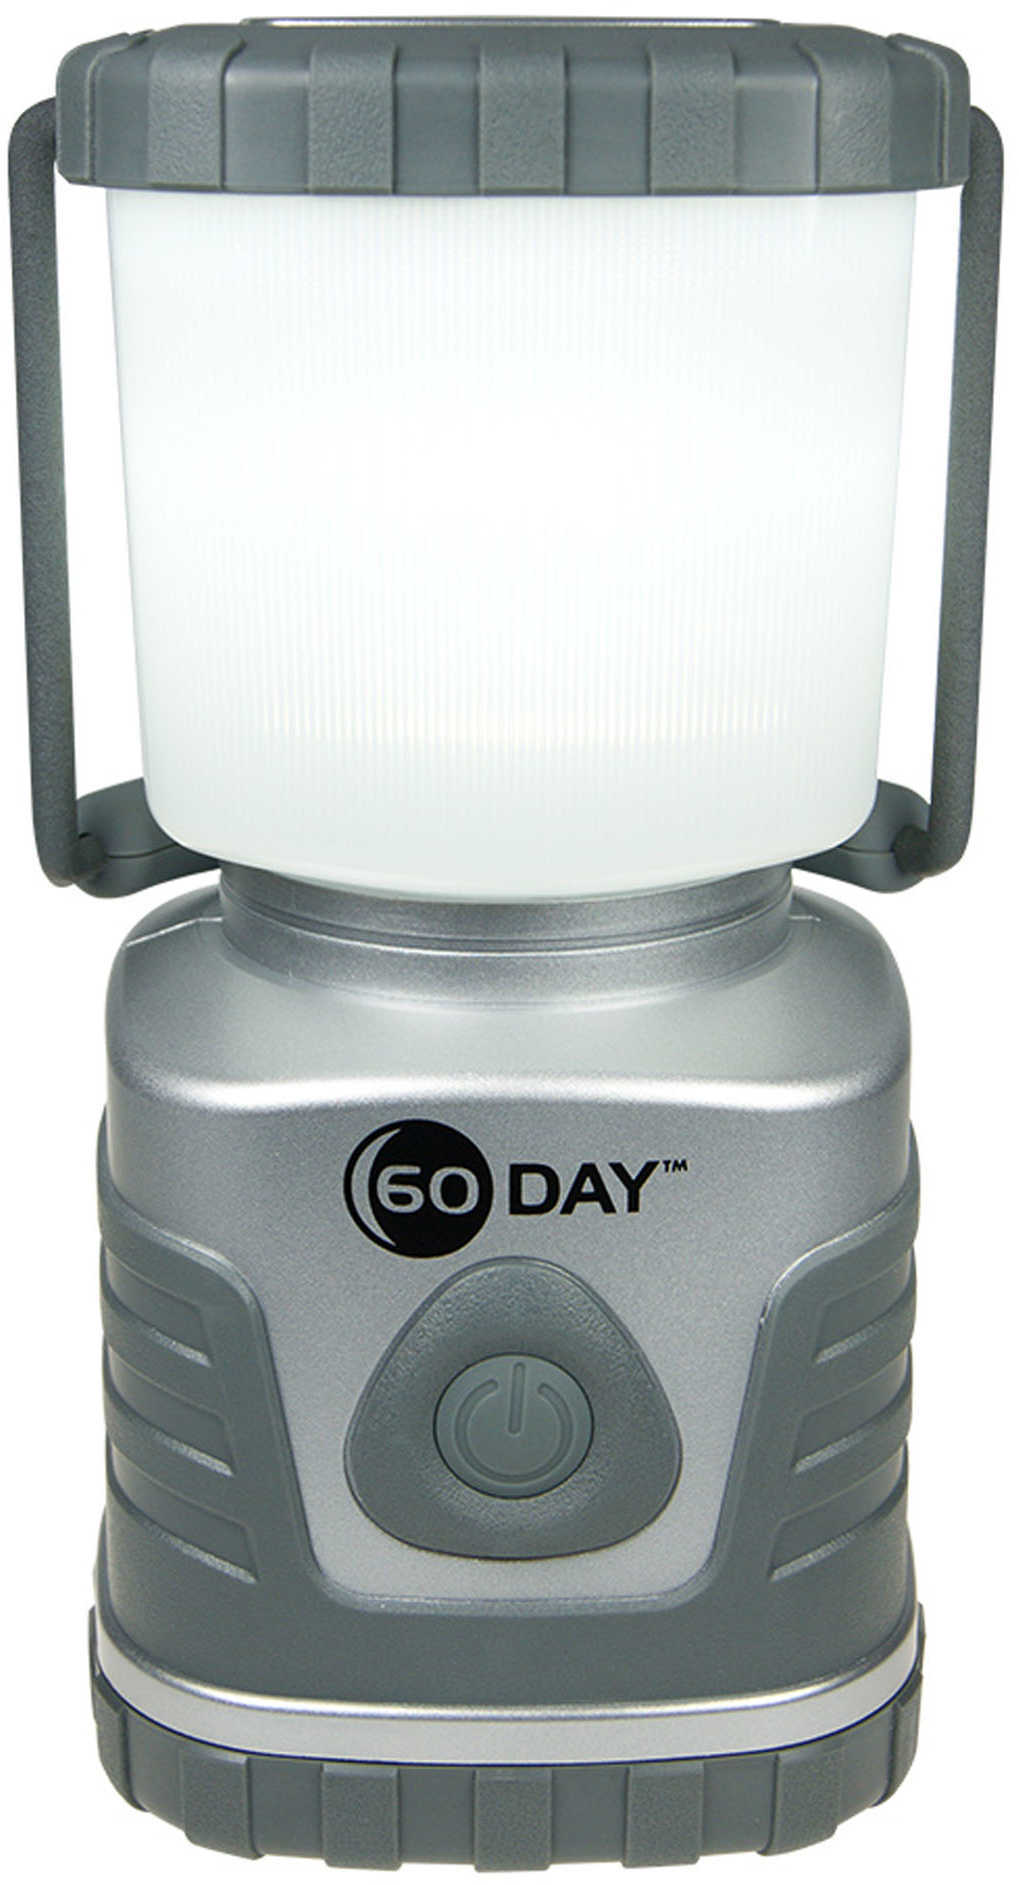 UST 60 Day Lantern up to 508 Lumens in Titanium